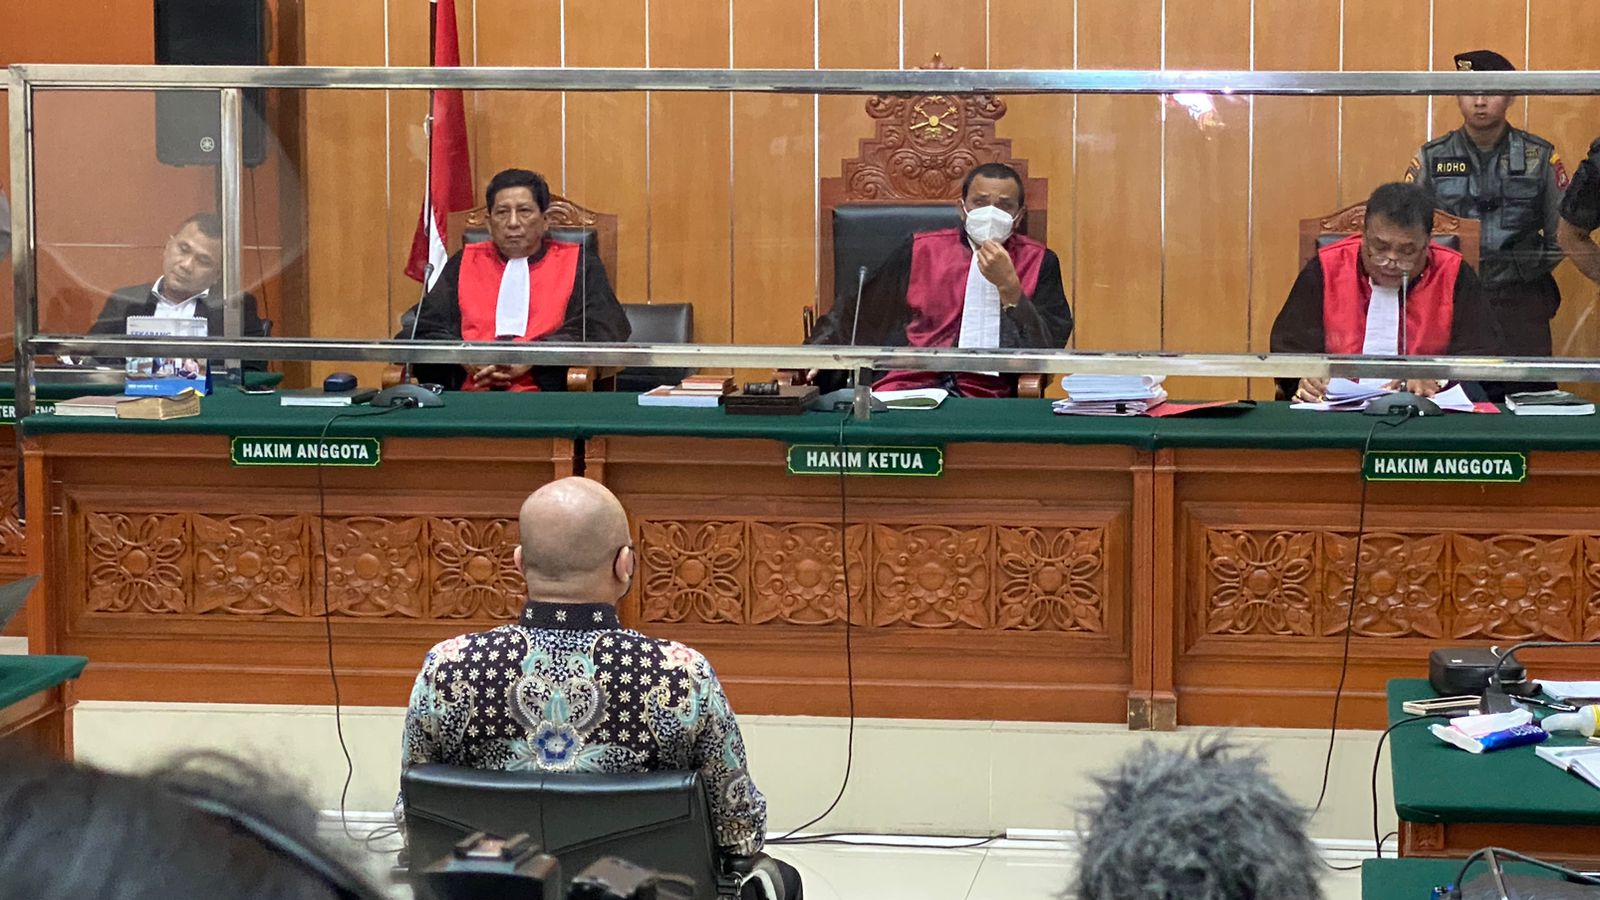 Alasan Teddy Minahasa Divonis Pidana Seumur Hidup, Majelis Hakim: Tidak Mengakui Perbuatan dan Mencoreng Institusi Polri